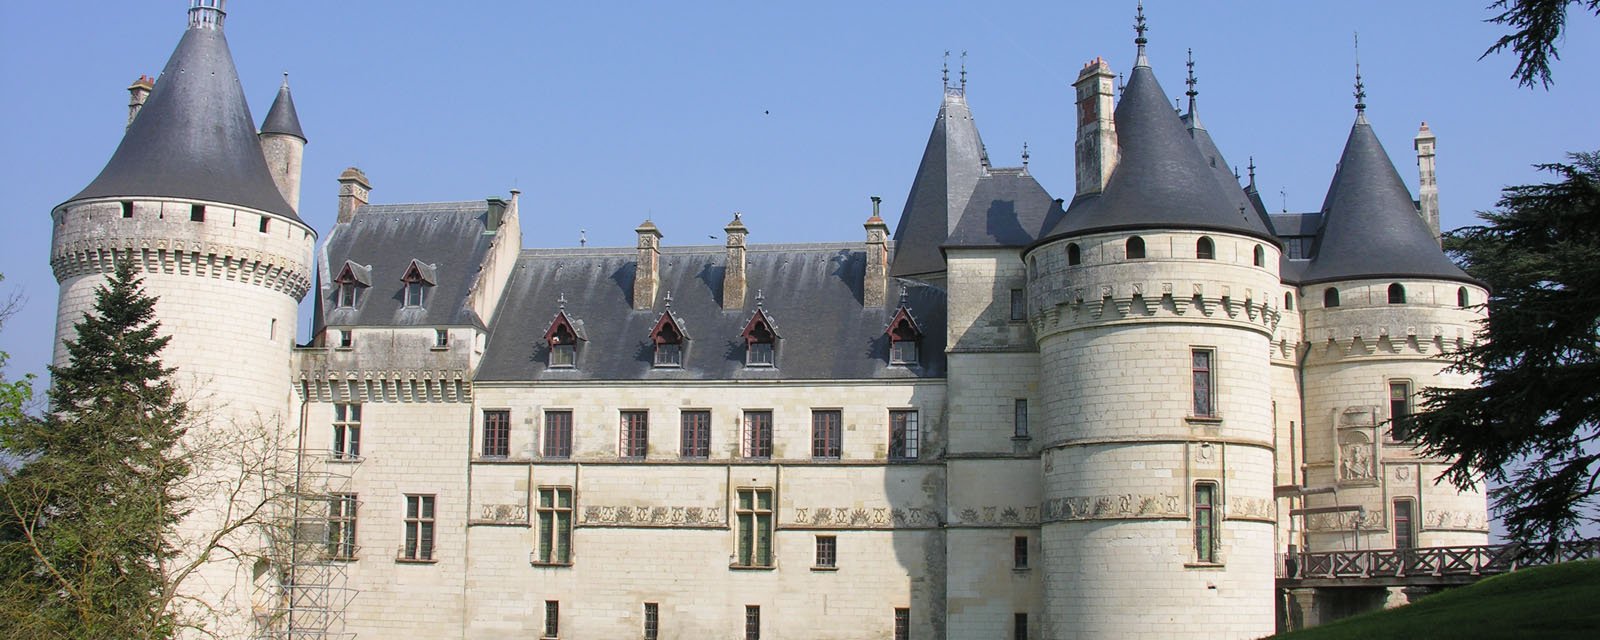 0-Château de Chaumont-sur-Loire